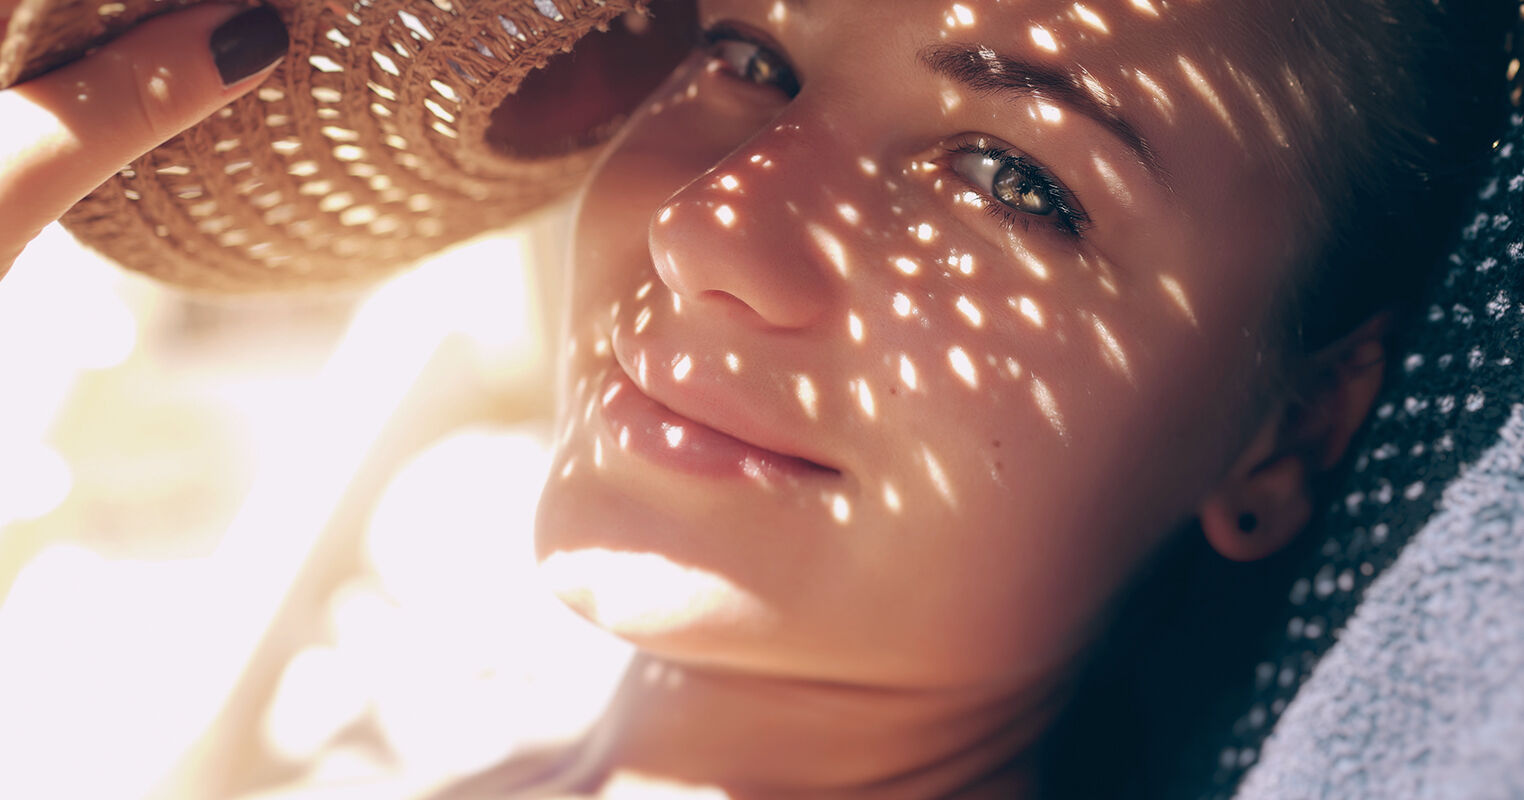 En smilende kvinne ser inn i kameraet, ansiktet i skyggen av stråhatten, bortsett fra noen stråler av lys som har kommet gjennom hullene i hatten